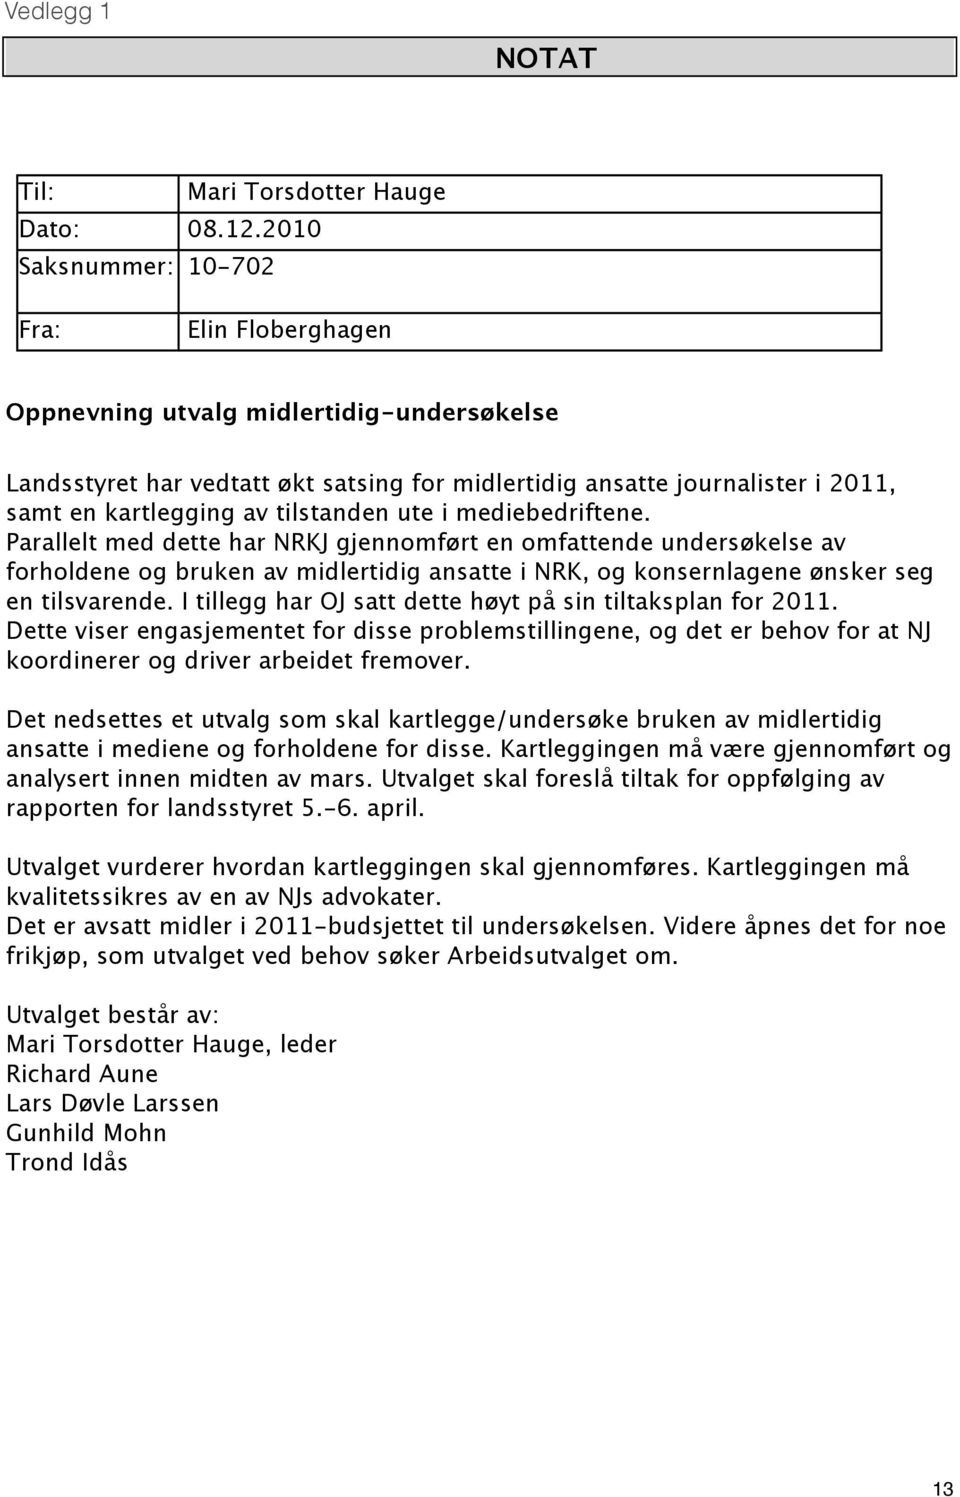 tilstanden ute i mediebedriftene. Parallelt med dette har NRKJ gjennomført en omfattende undersøkelse av forholdene og bruken av midlertidig ansatte i NRK, og konsernlagene ønsker seg en tilsvarende.